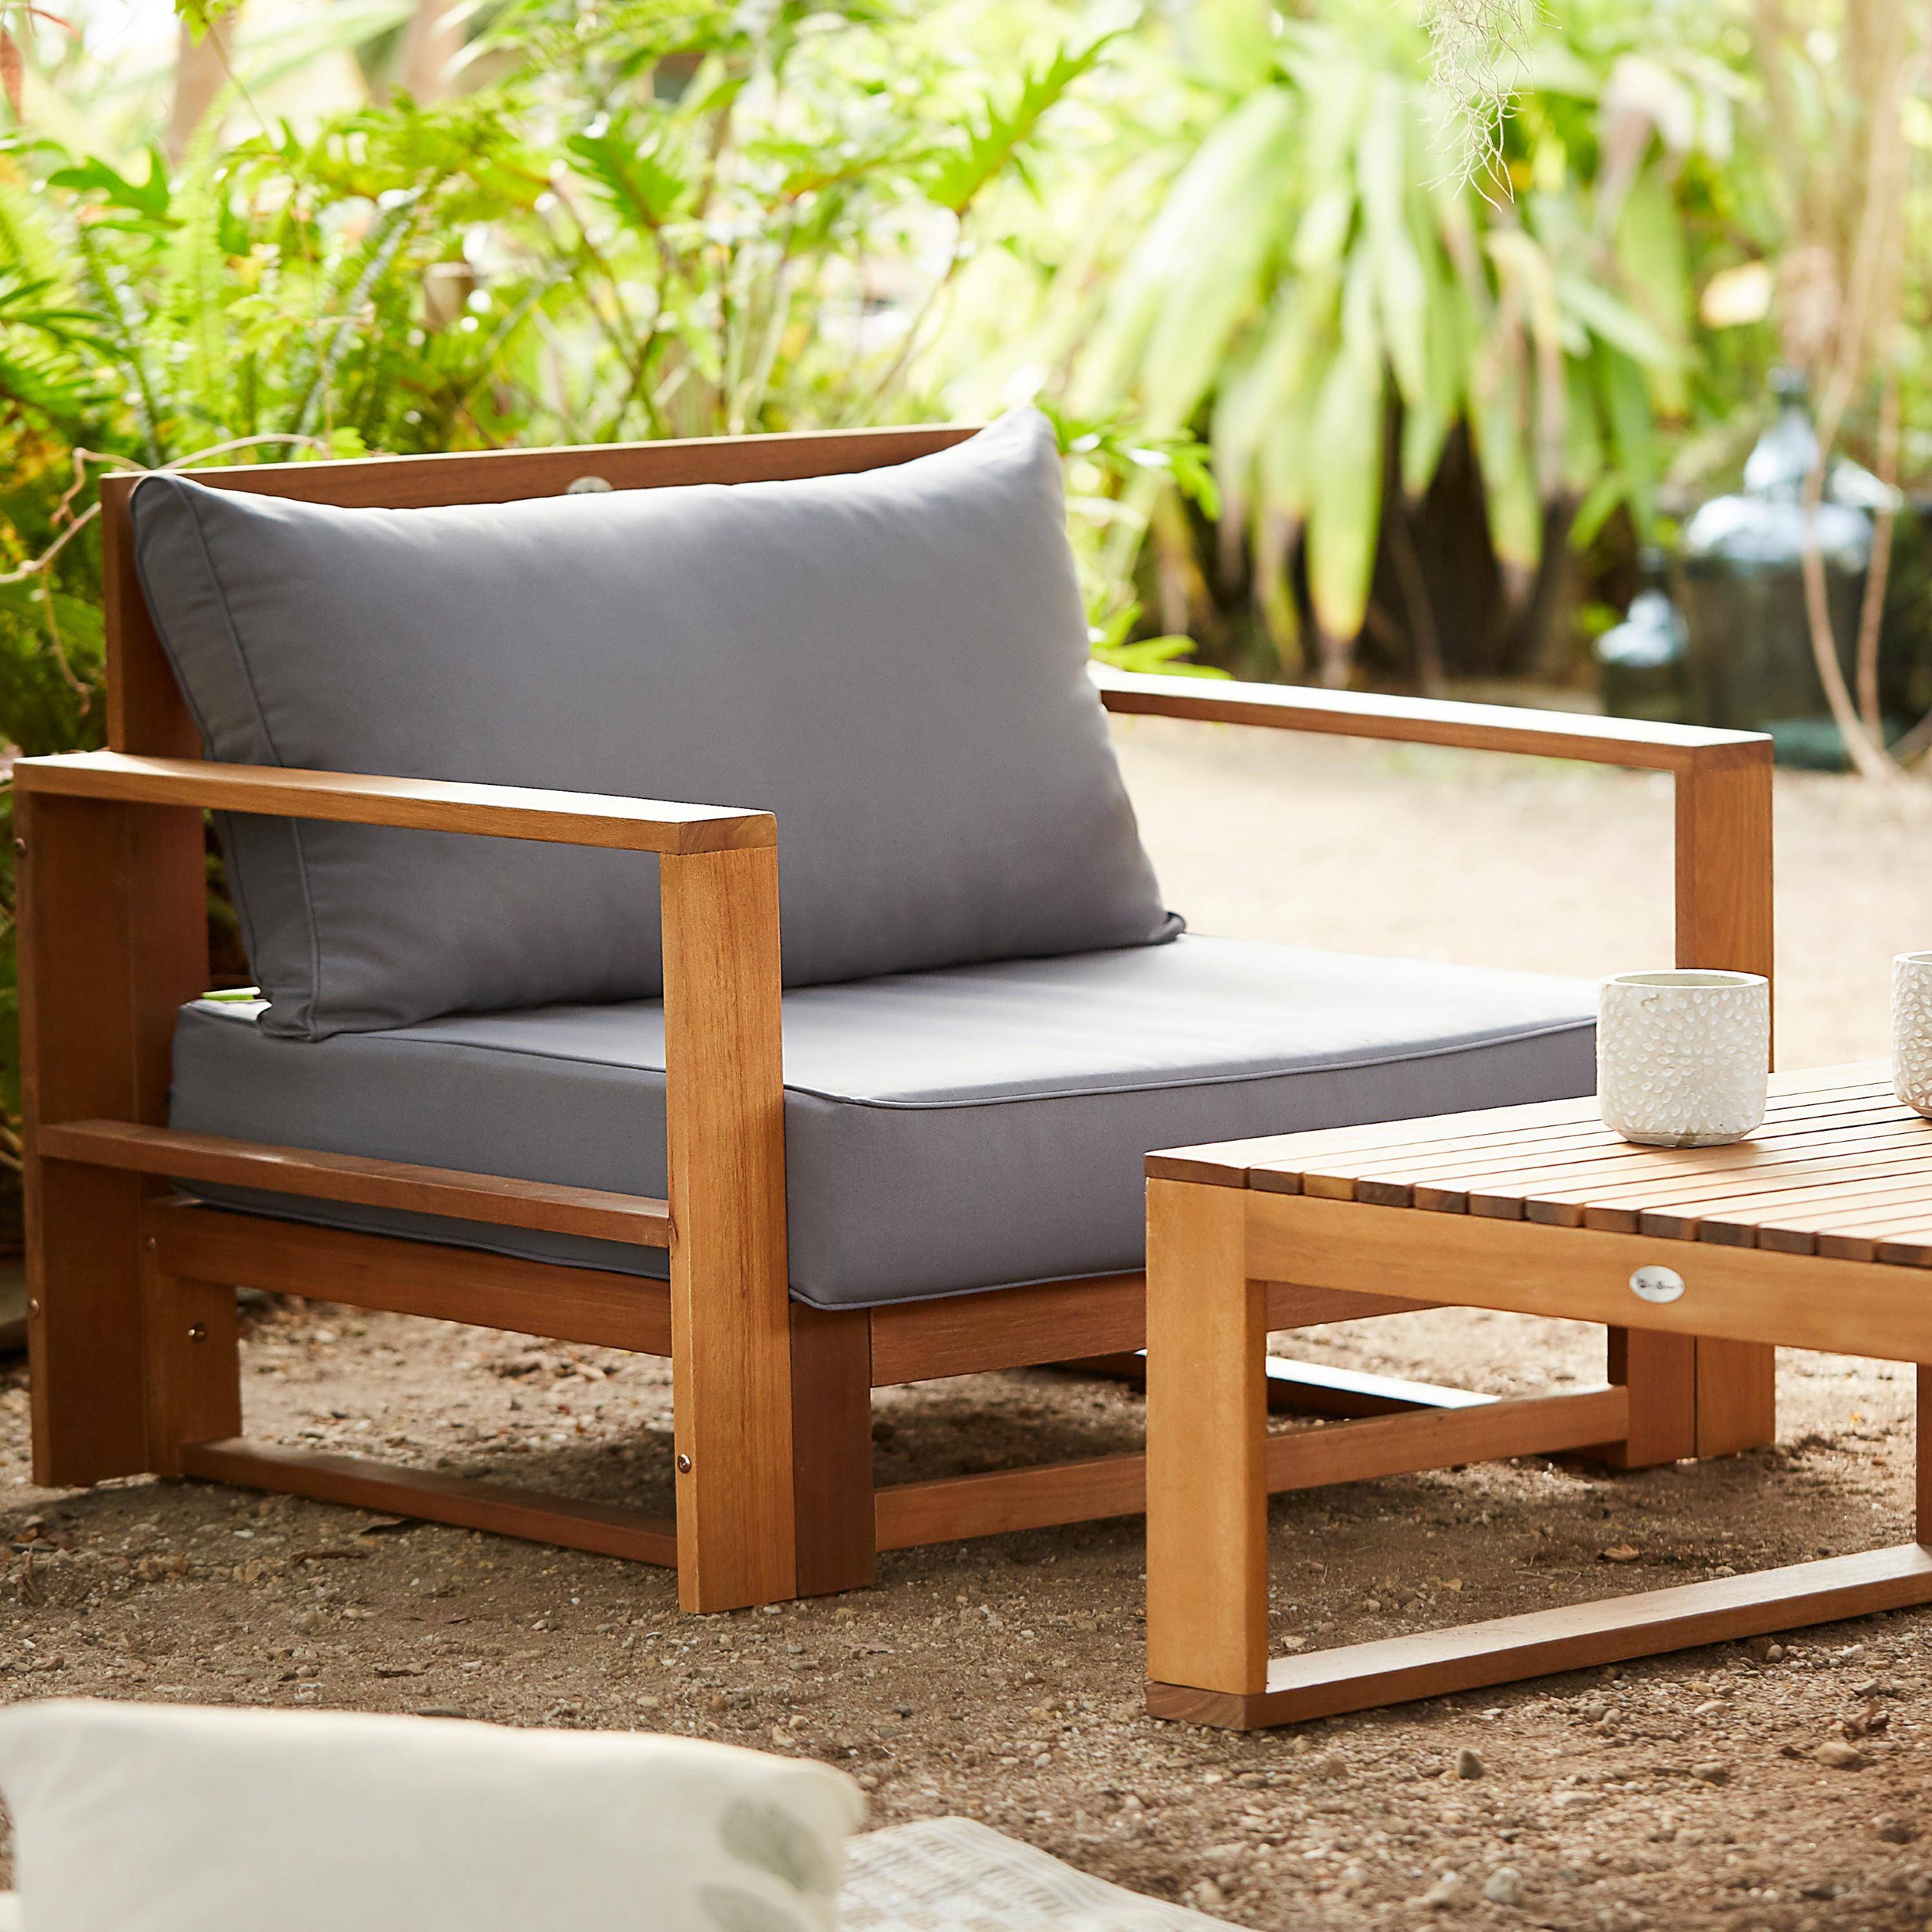 Gartenmöbel aus Holz mit 5 Sitzplätzen - Mendoza - graue Kissen, Sofa, Sessel und Couchtisch aus Akazie, 6 modulare Elemente, Design Photo3